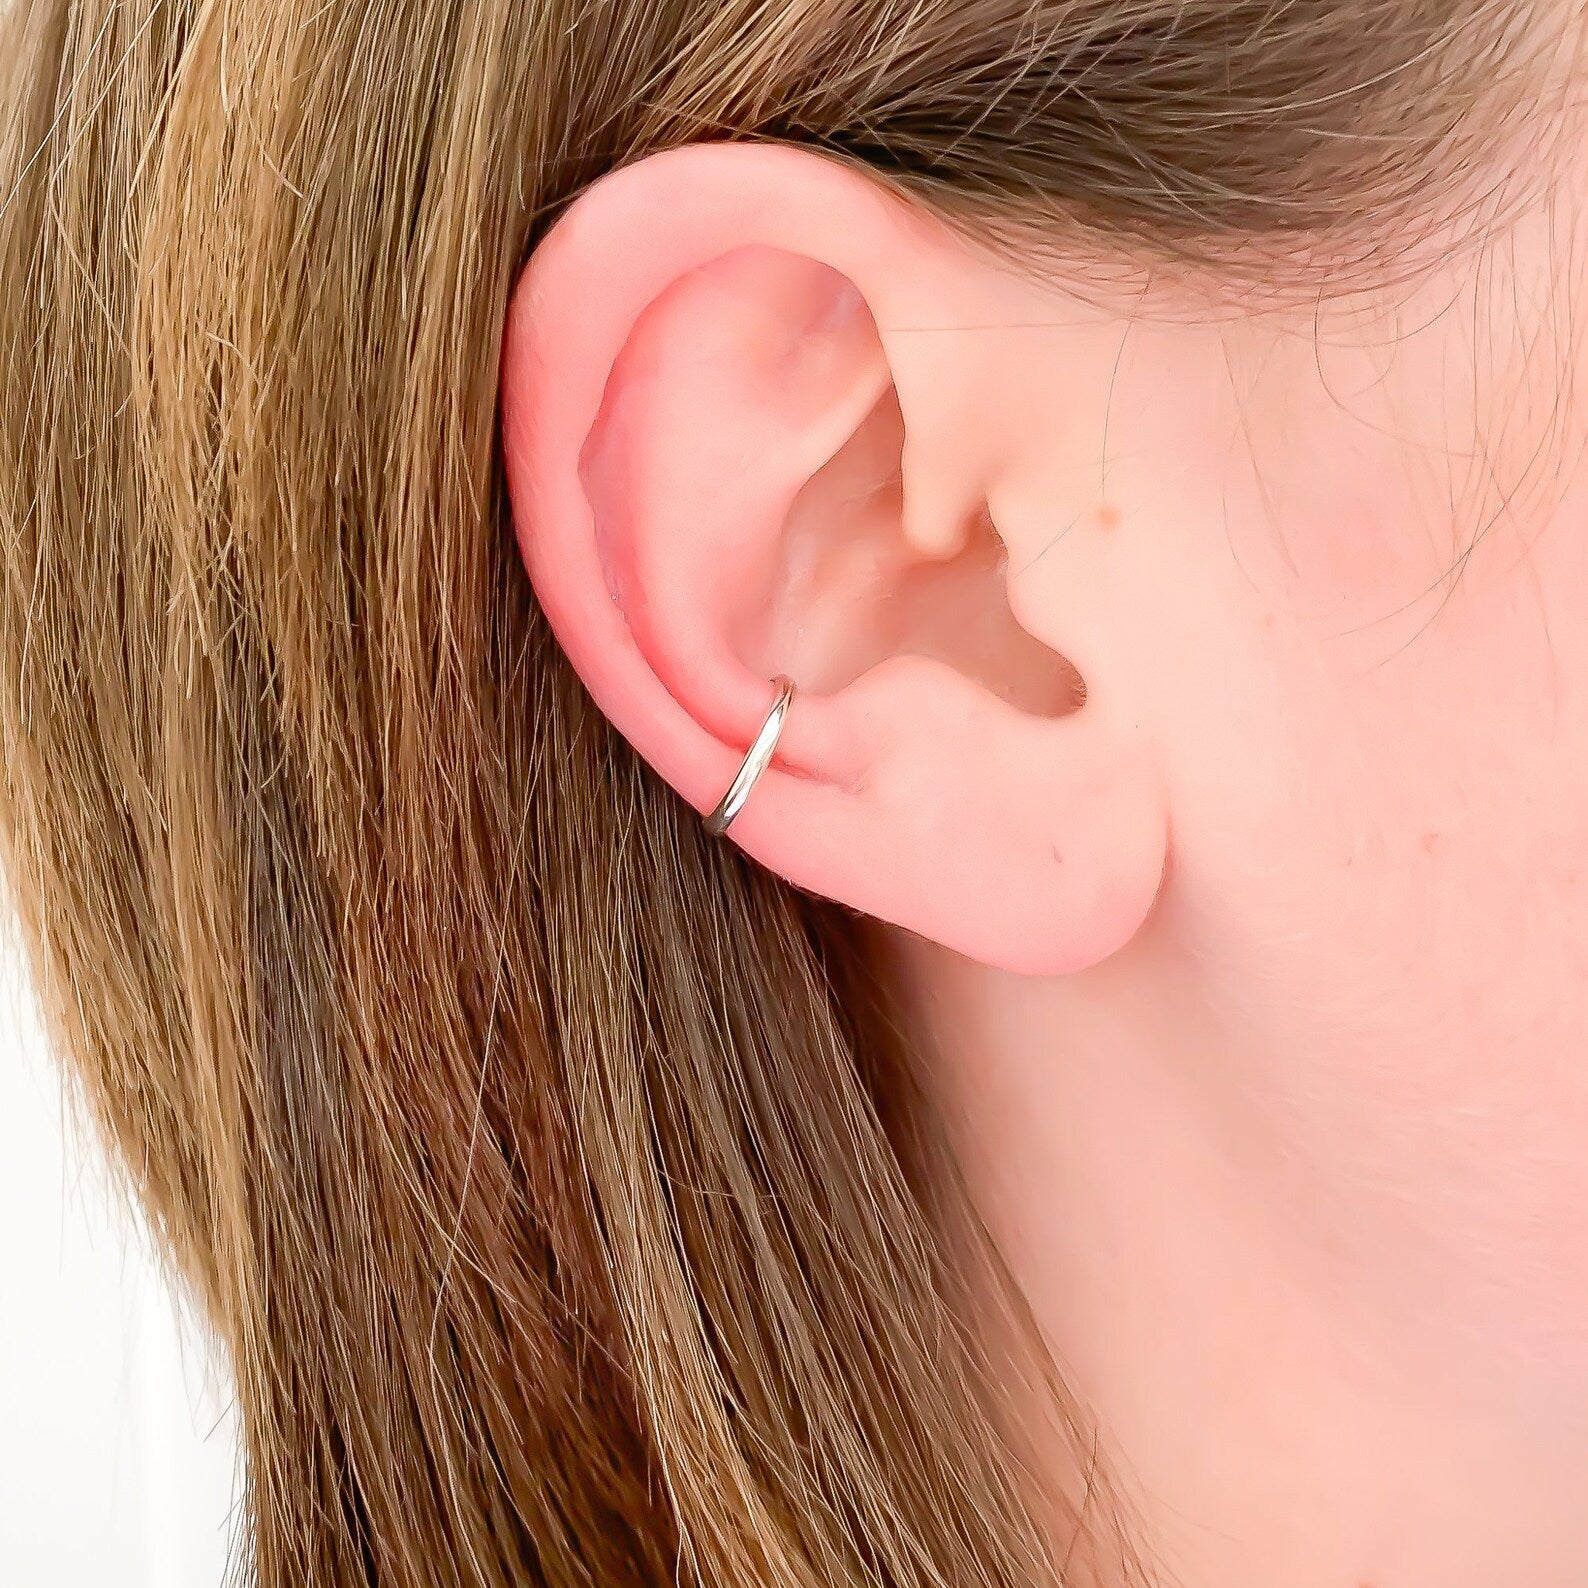 Ear-cuff-no-piercing